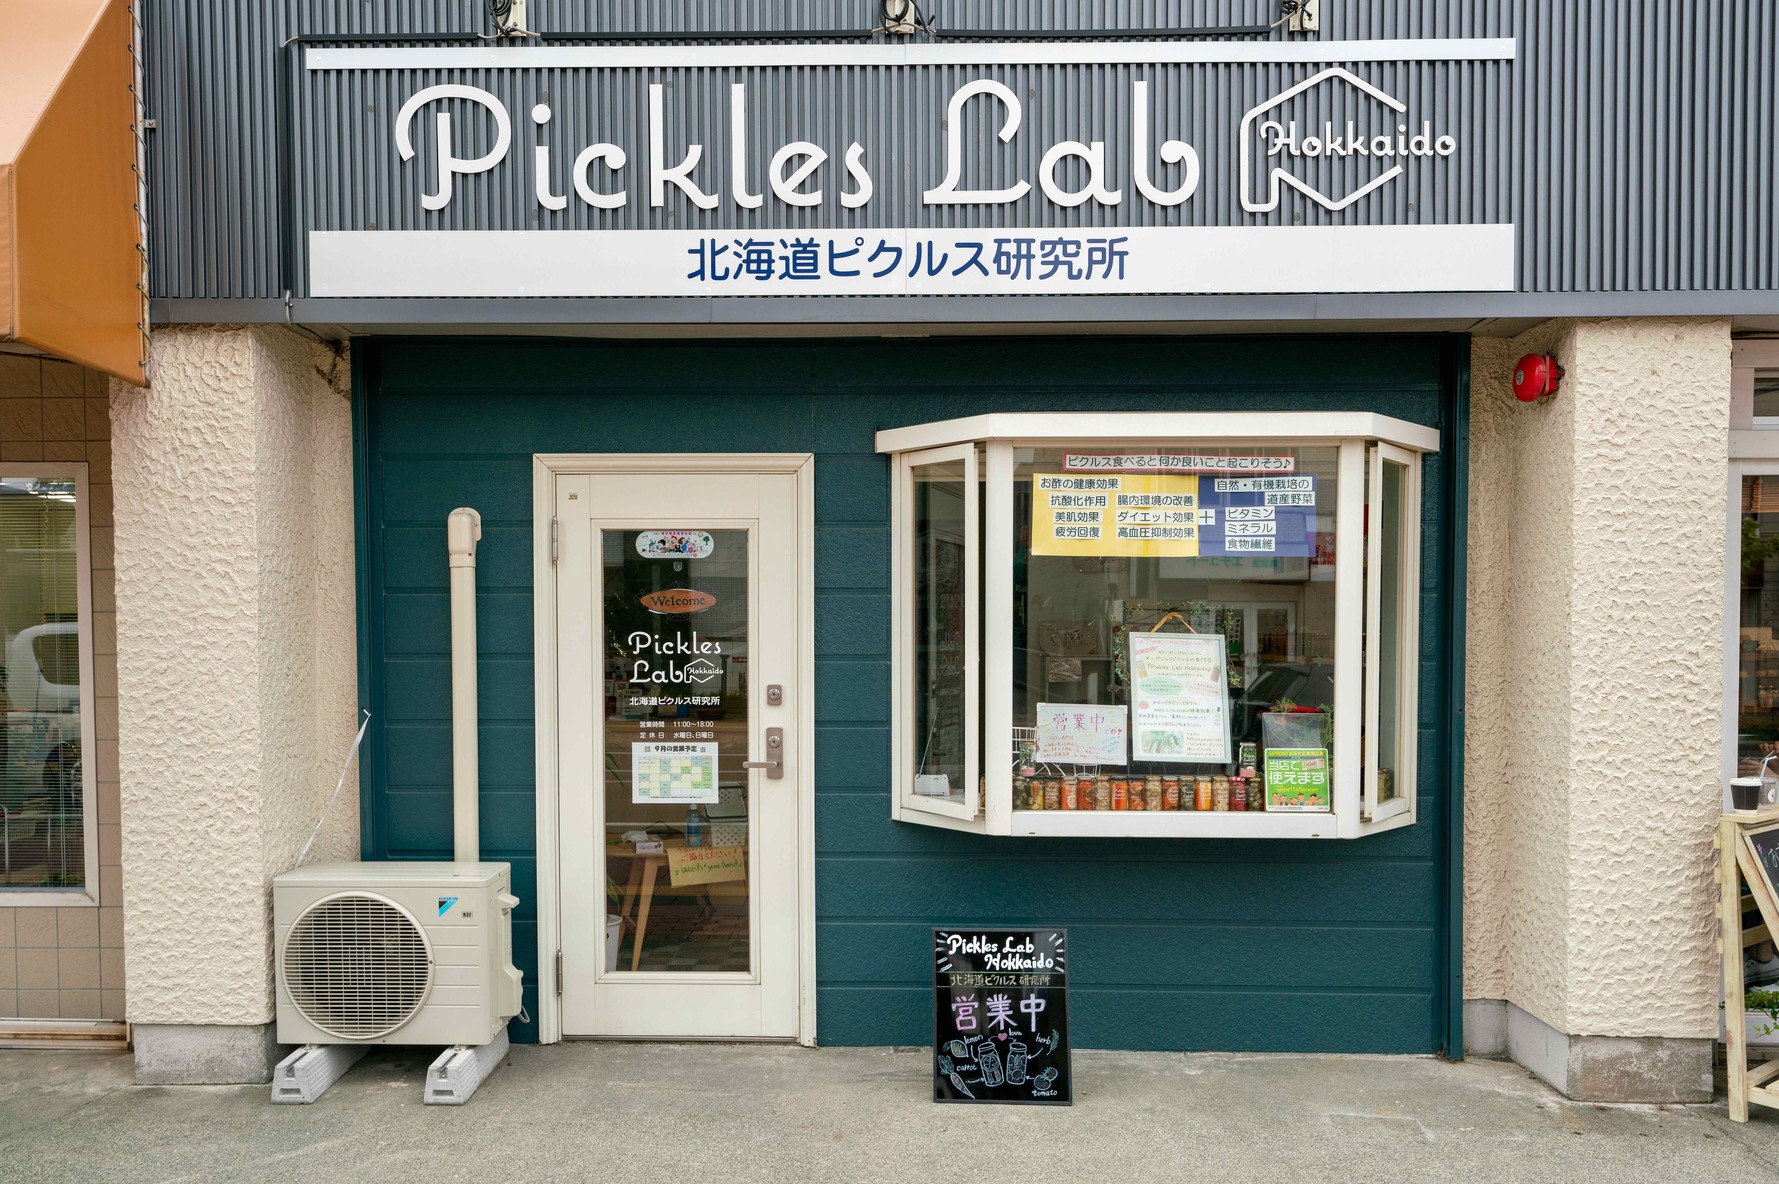 北海道札幌市にあるピクルスの製造・販売店Pickles Lab Hokkaido,北海道ピクルス研究所,ピクルスラボ